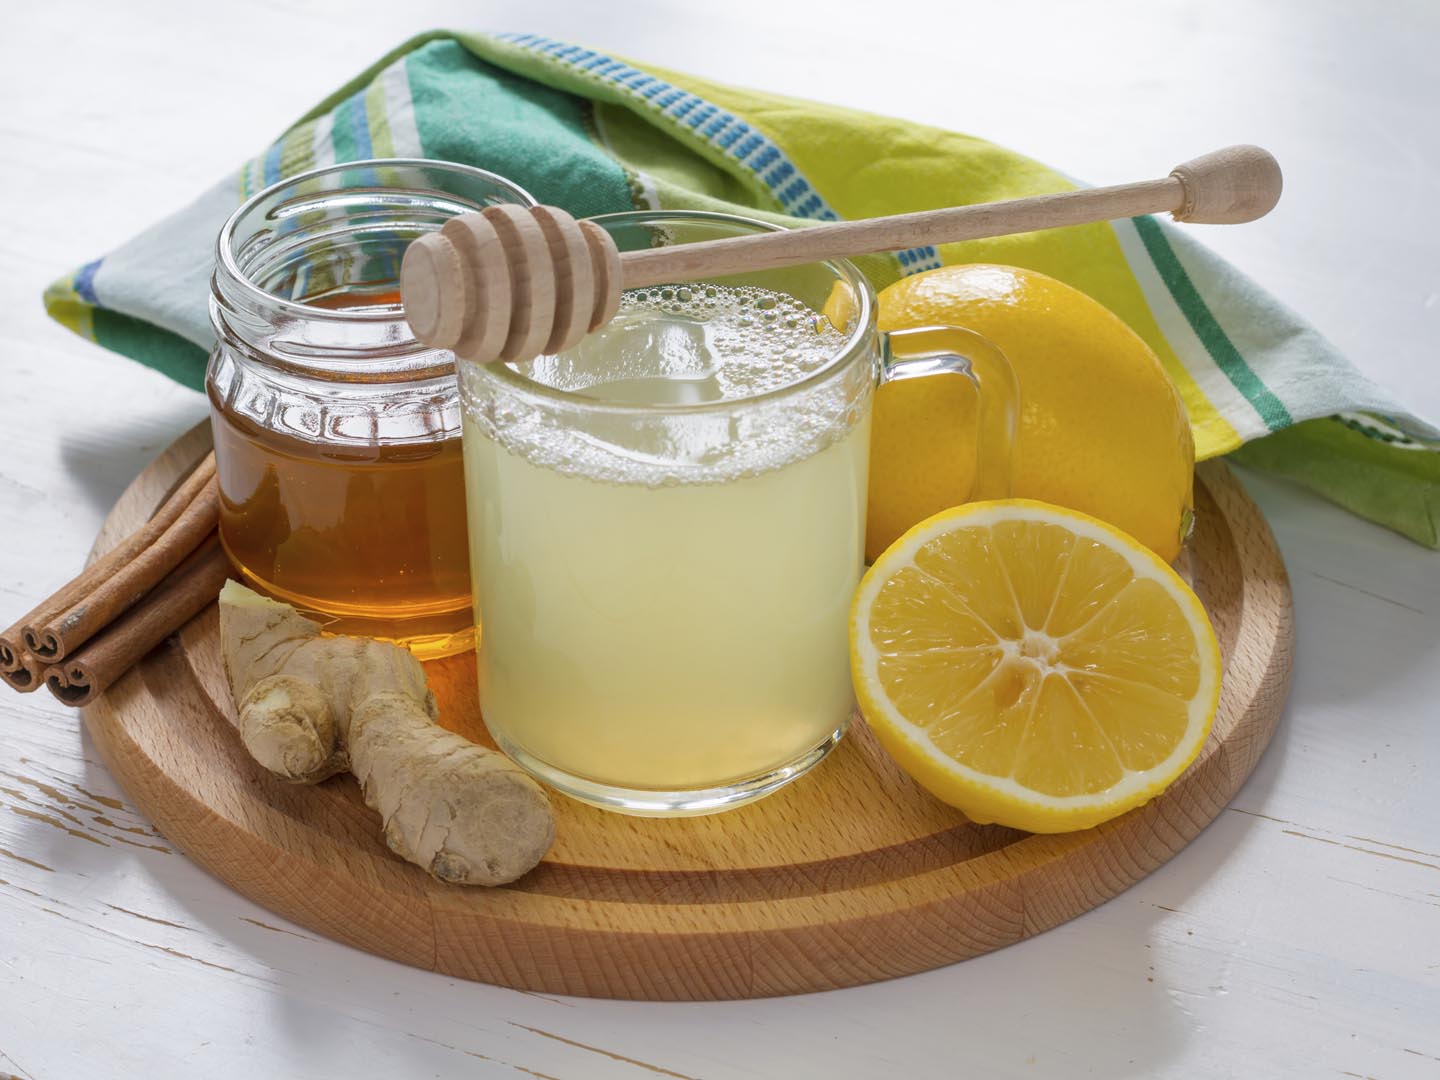 العسل والليمون والزنجبيل شراب التخسيس الفعال وتدعيم المناعة